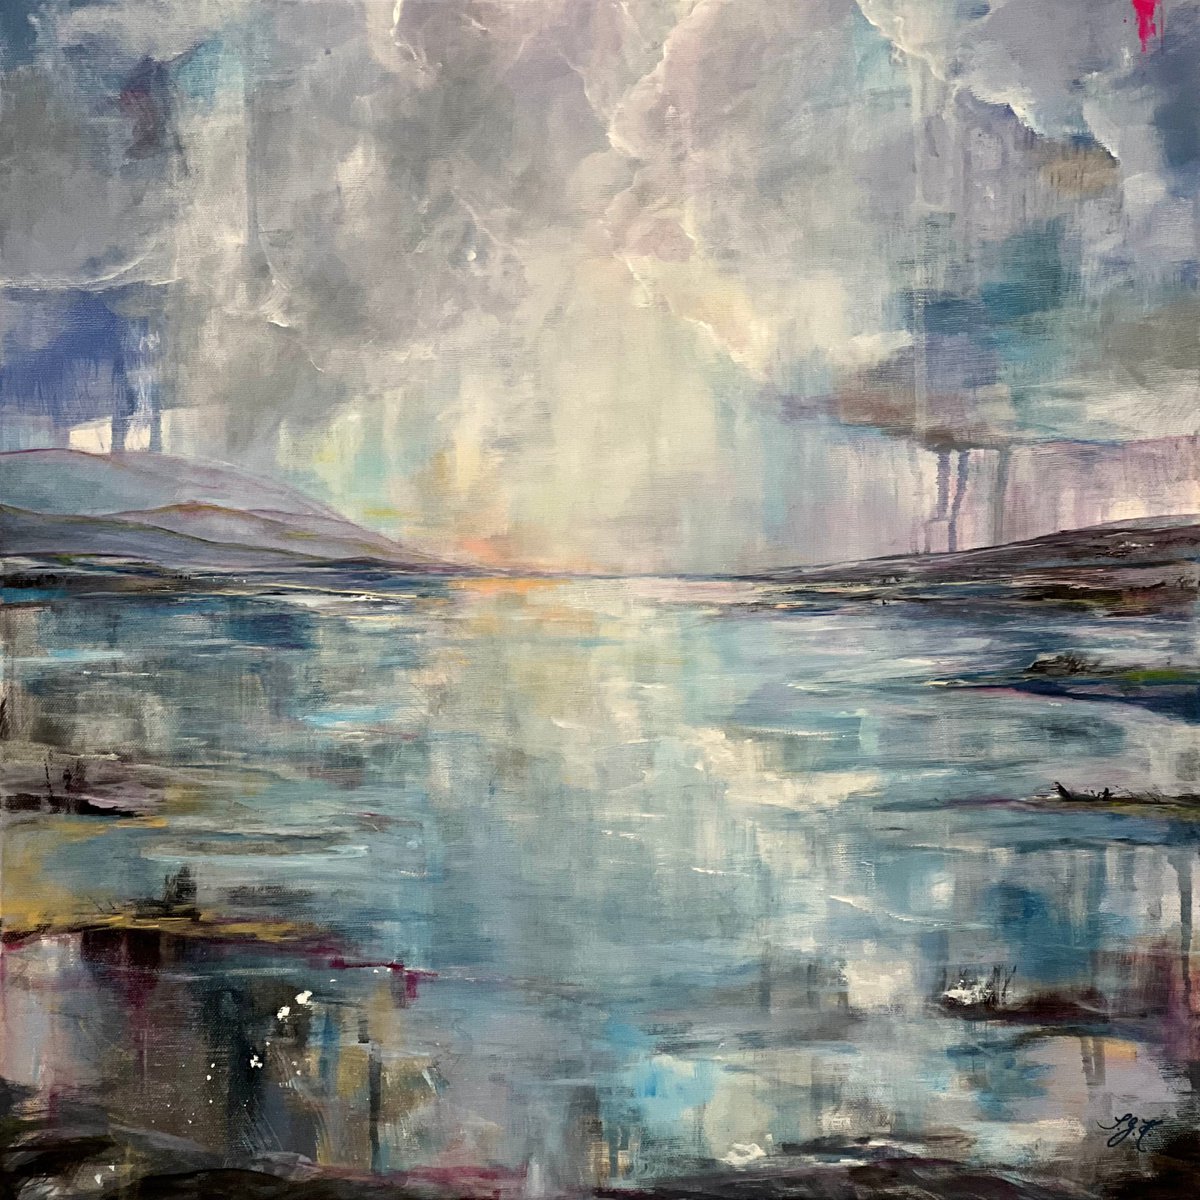 Twilight At The Ocean 2 by Sandra Gebhardt-Hoepfner